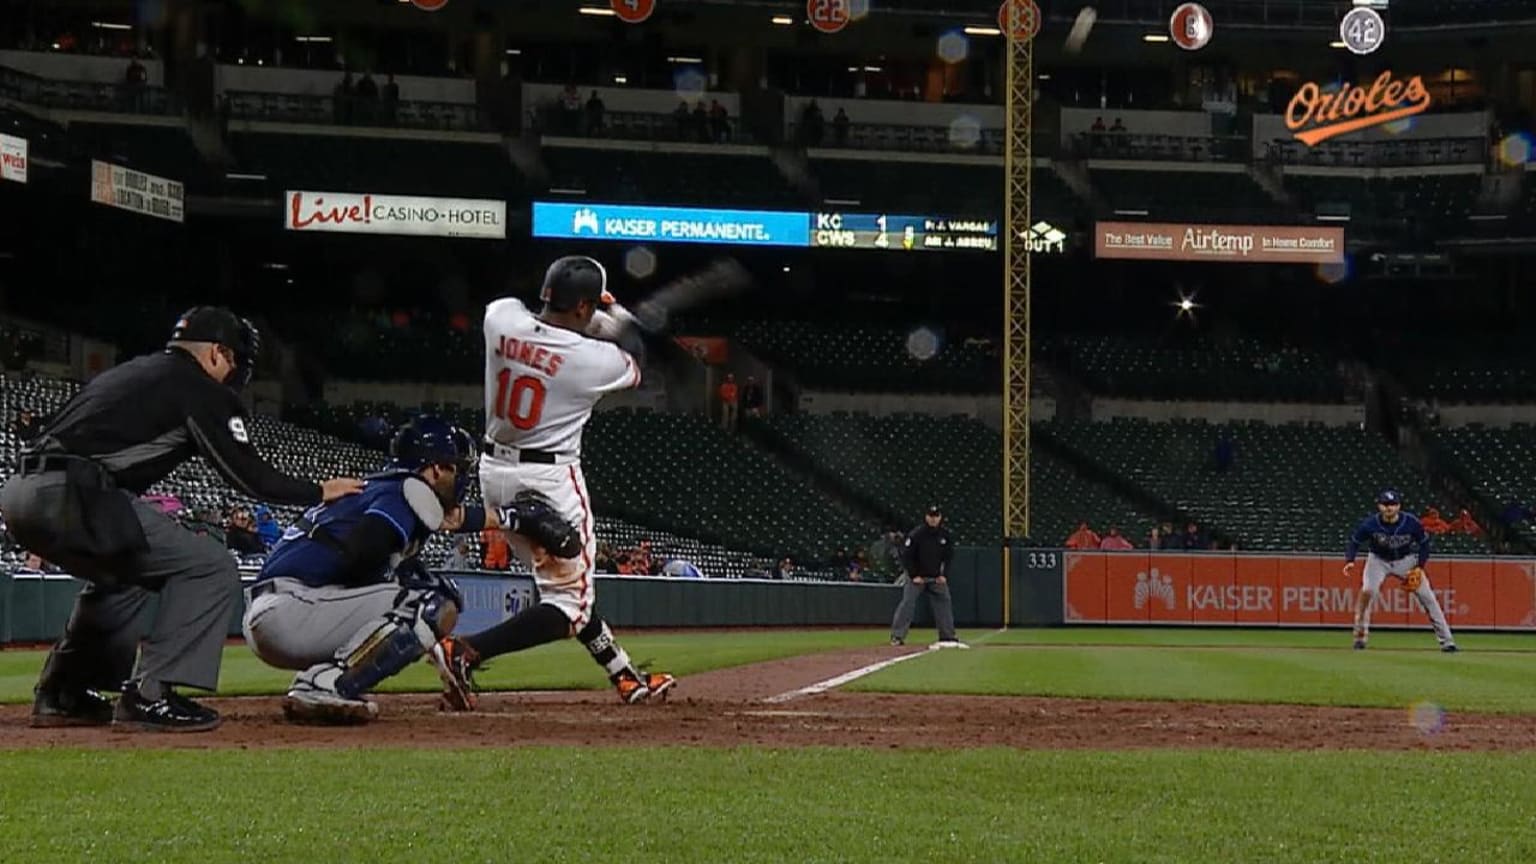 VIDEO: Adam Jones' First Home Run in Japan Was an Absolute Laser Shot